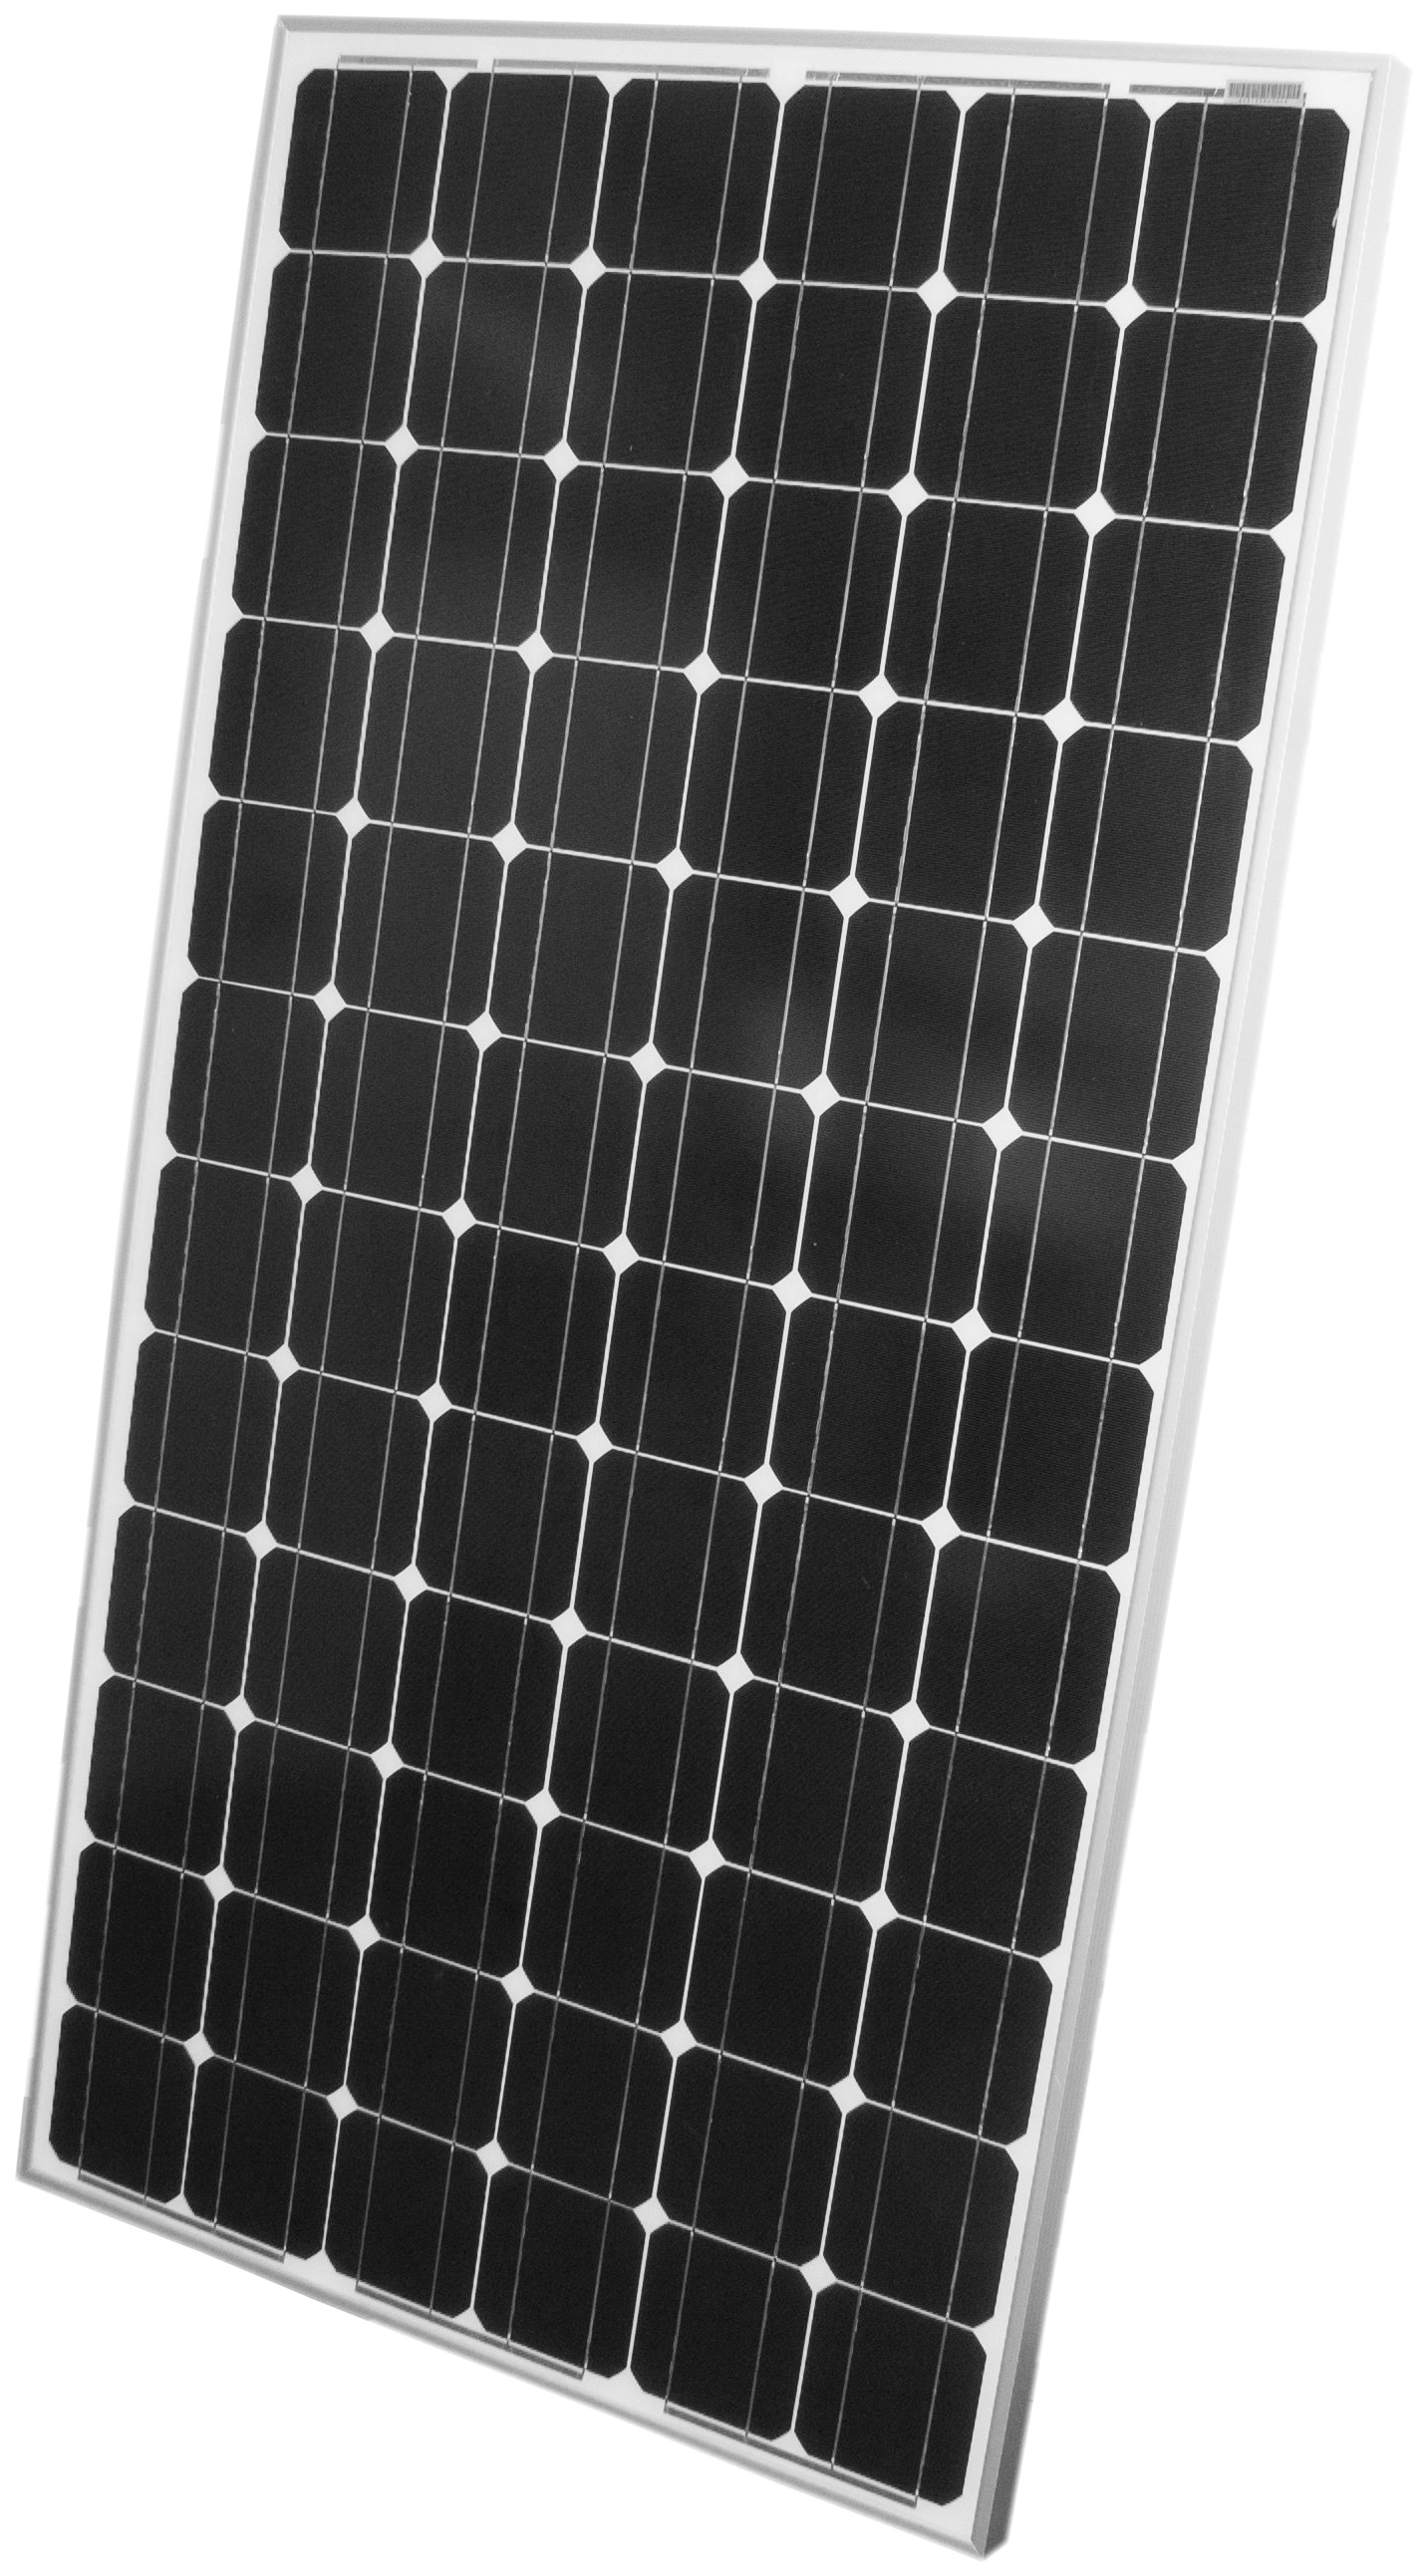 Phaesun Solarmodul "Sun Plus 200 5", 24 VDC, IP65 Schutz